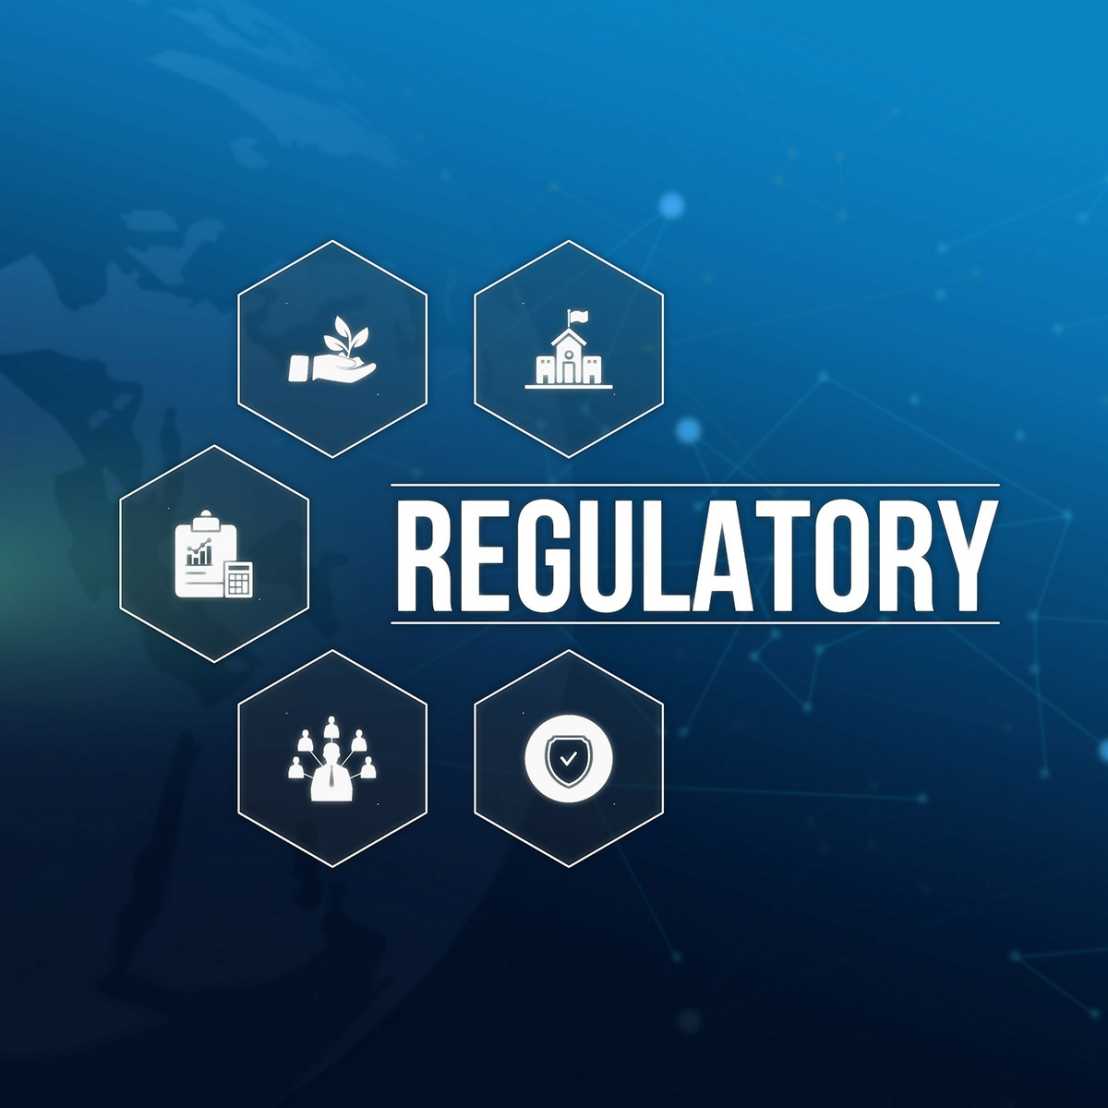 Association founded: Digital Medical Regulation